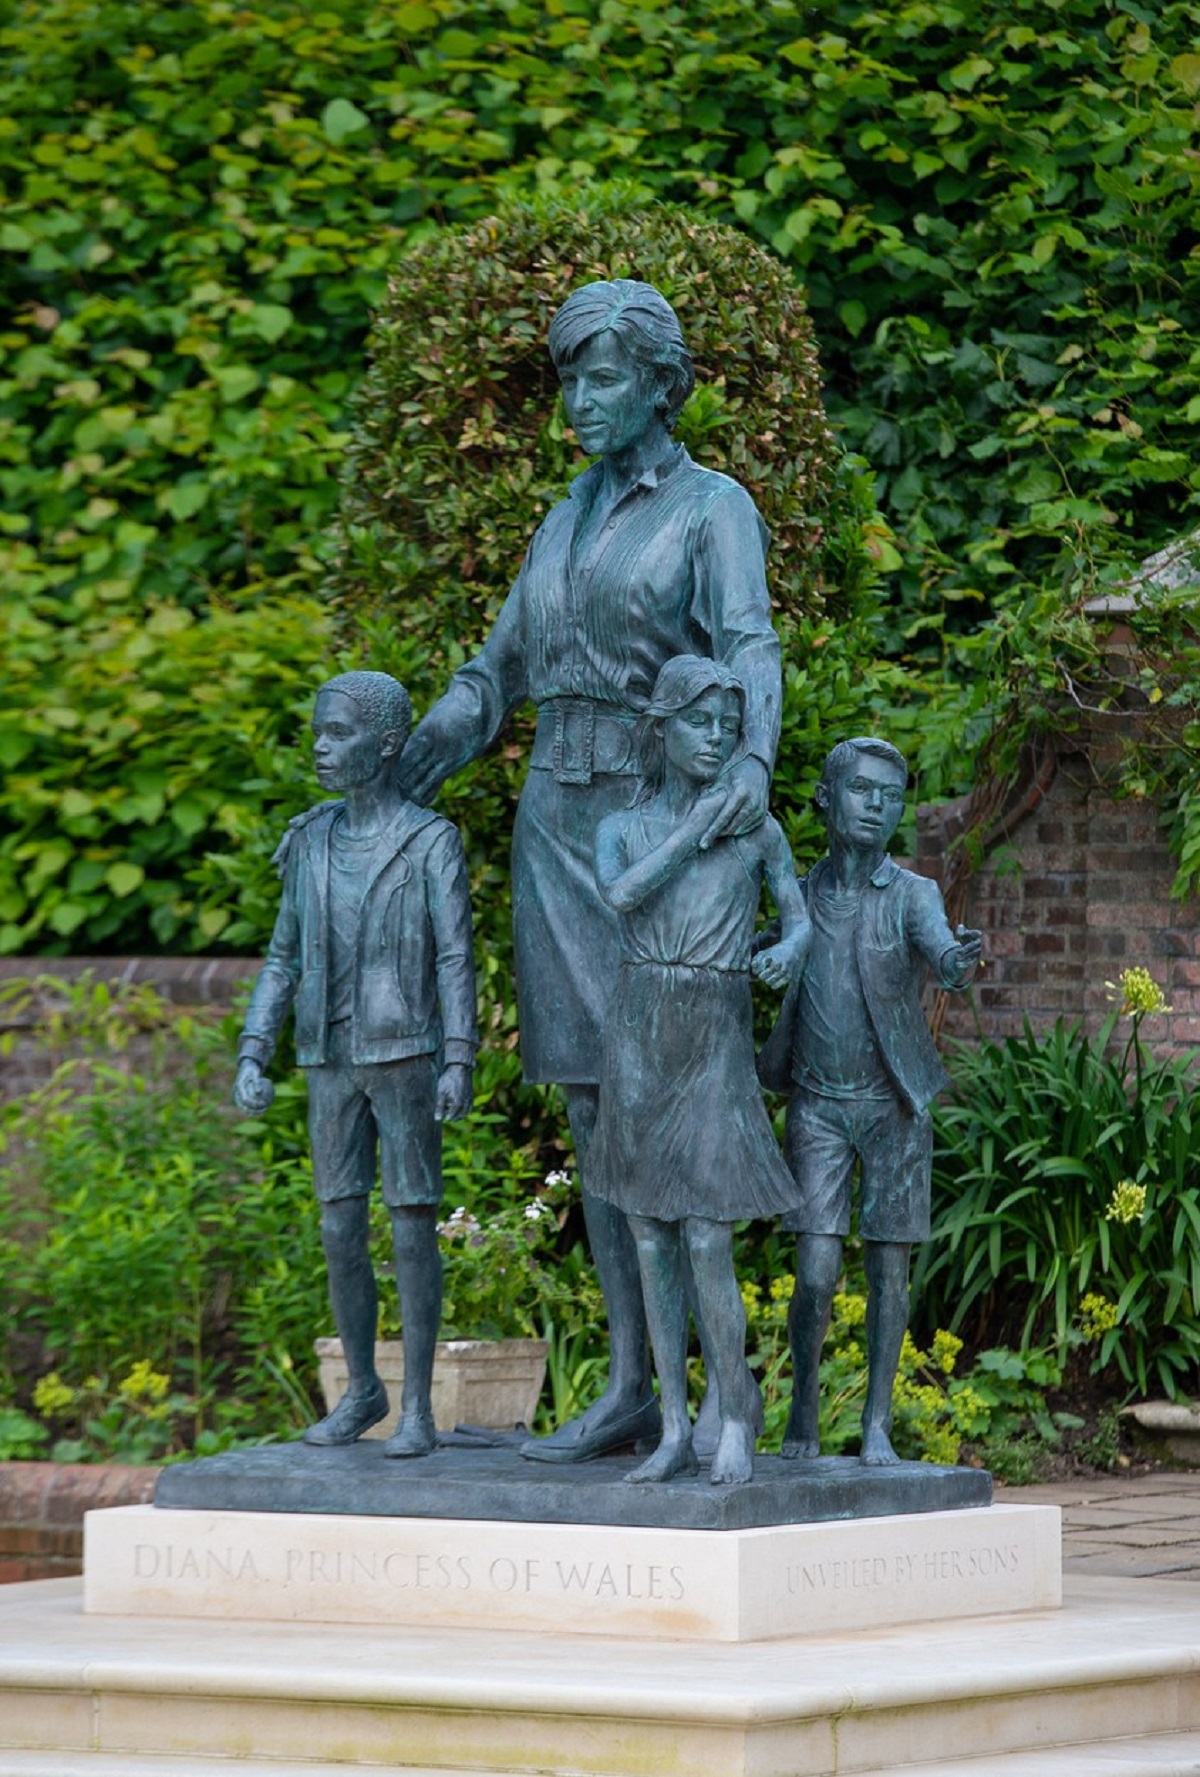 Fotografie a statuii Prințesei Diana langă care se află sculptați trei copii simbolizând implicarea sa și impactul pe care l-a avut de-a lungul generațiilor